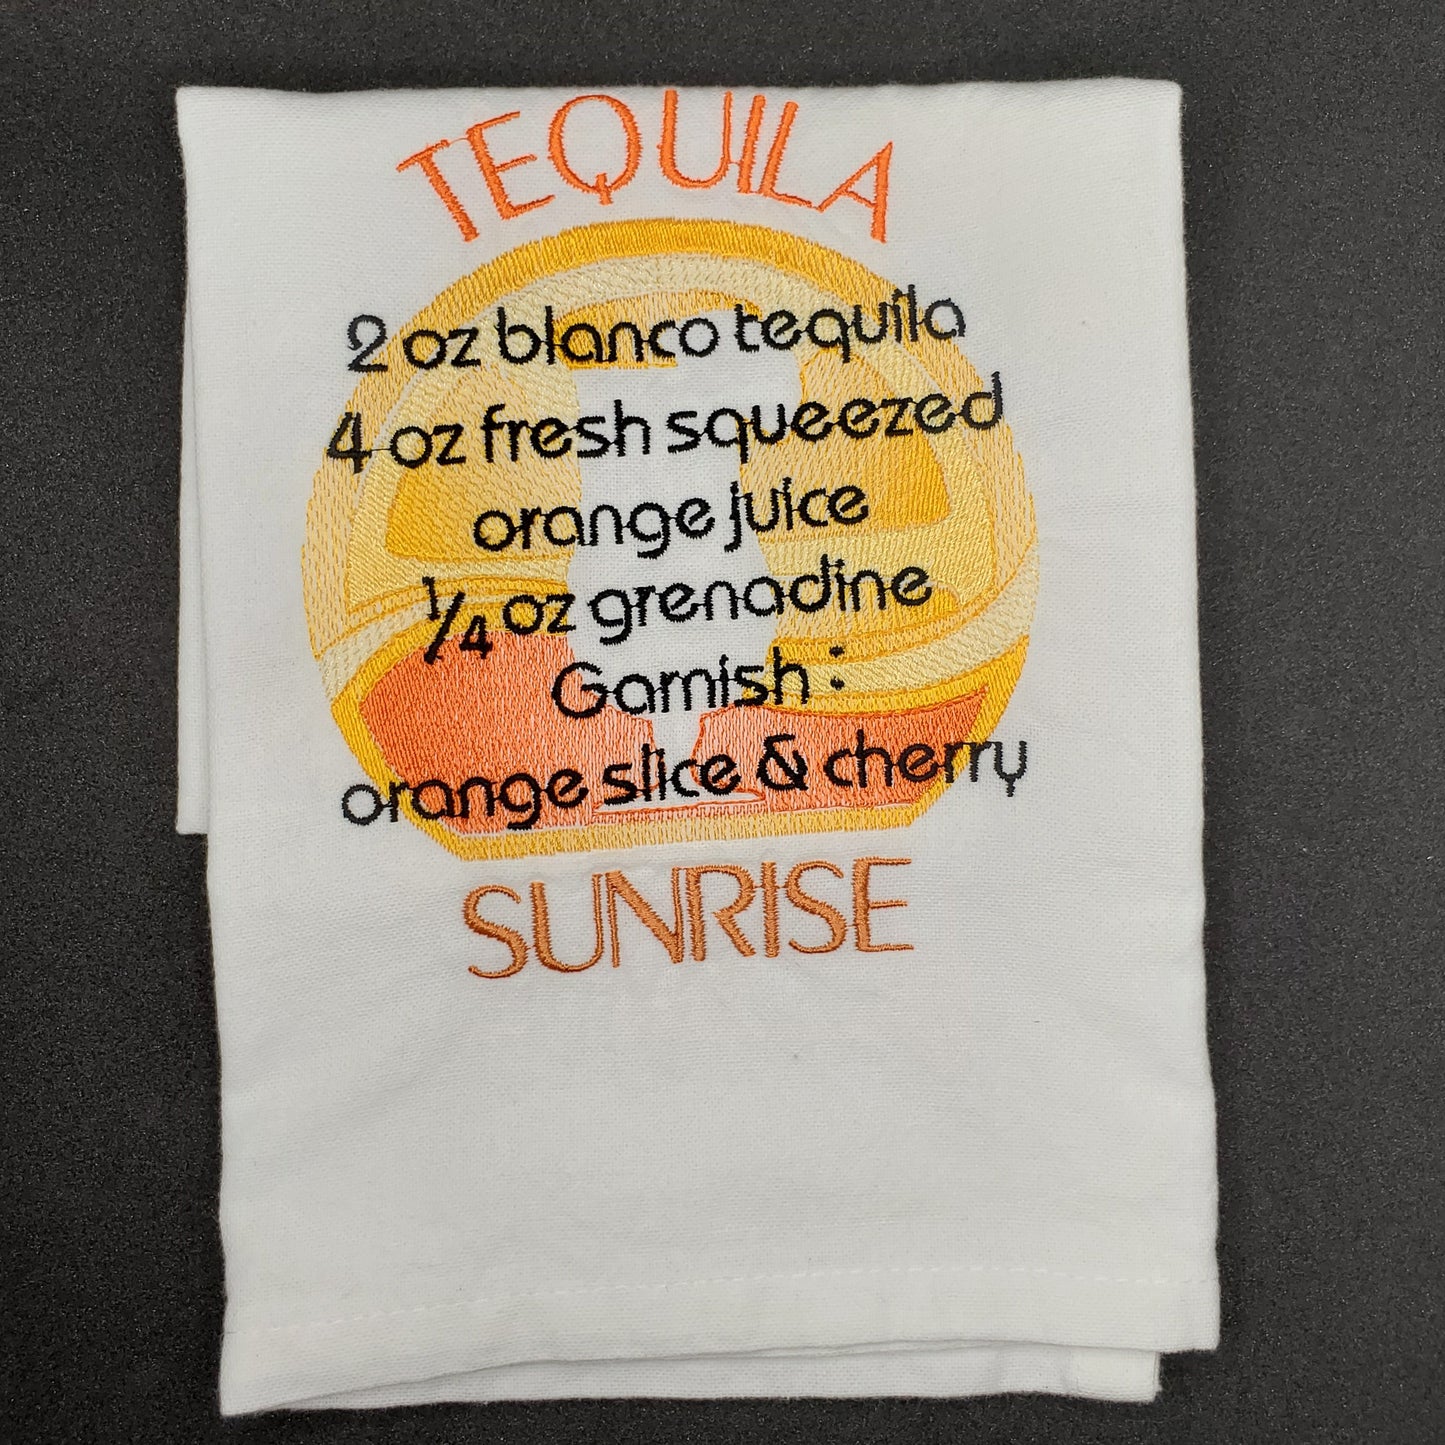 Tequila Sunrise Recipe